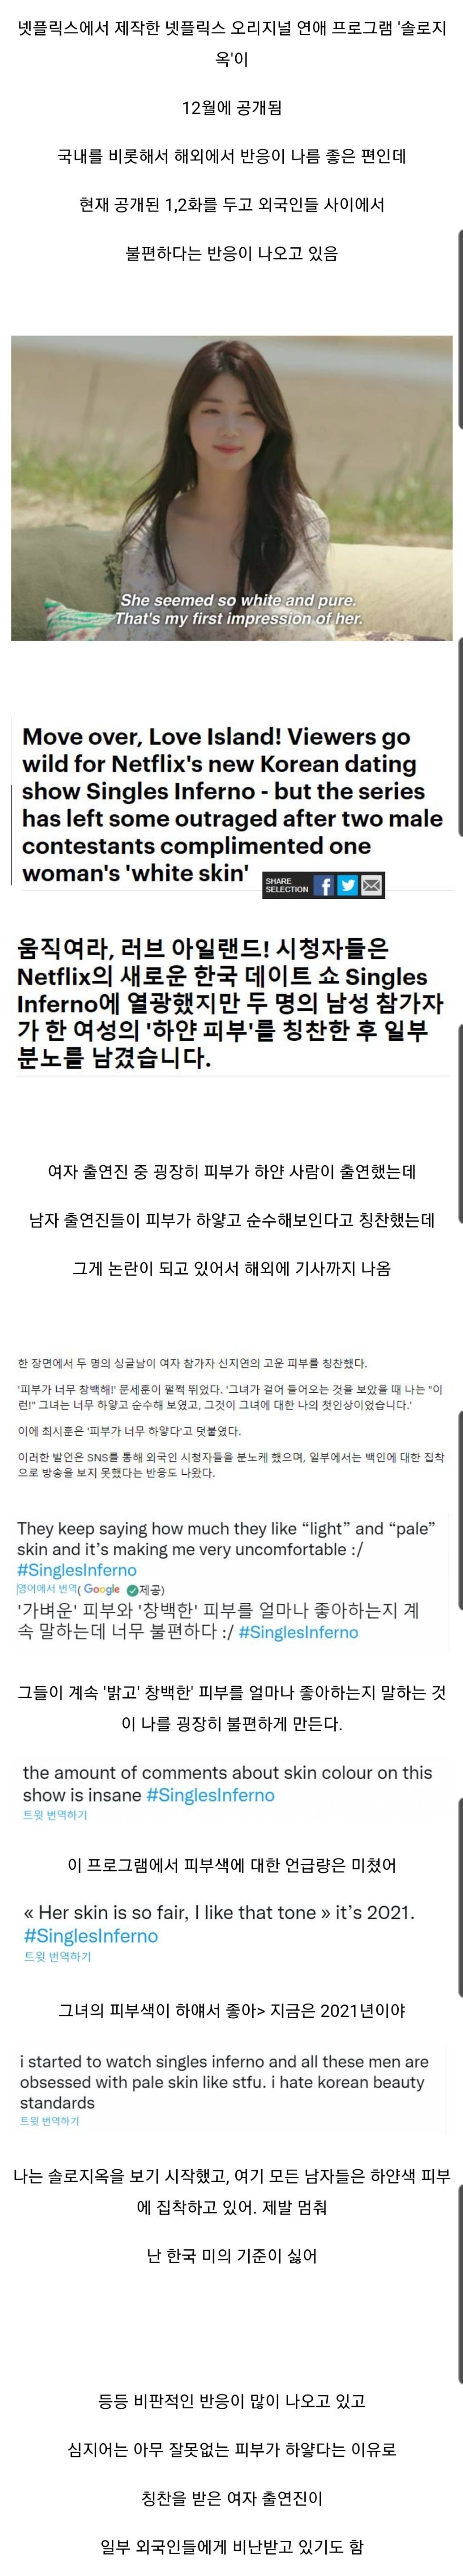 넷플릭스에서 새로 공개된 한국 예능이 외국에서 논란이 된 이유.jpg